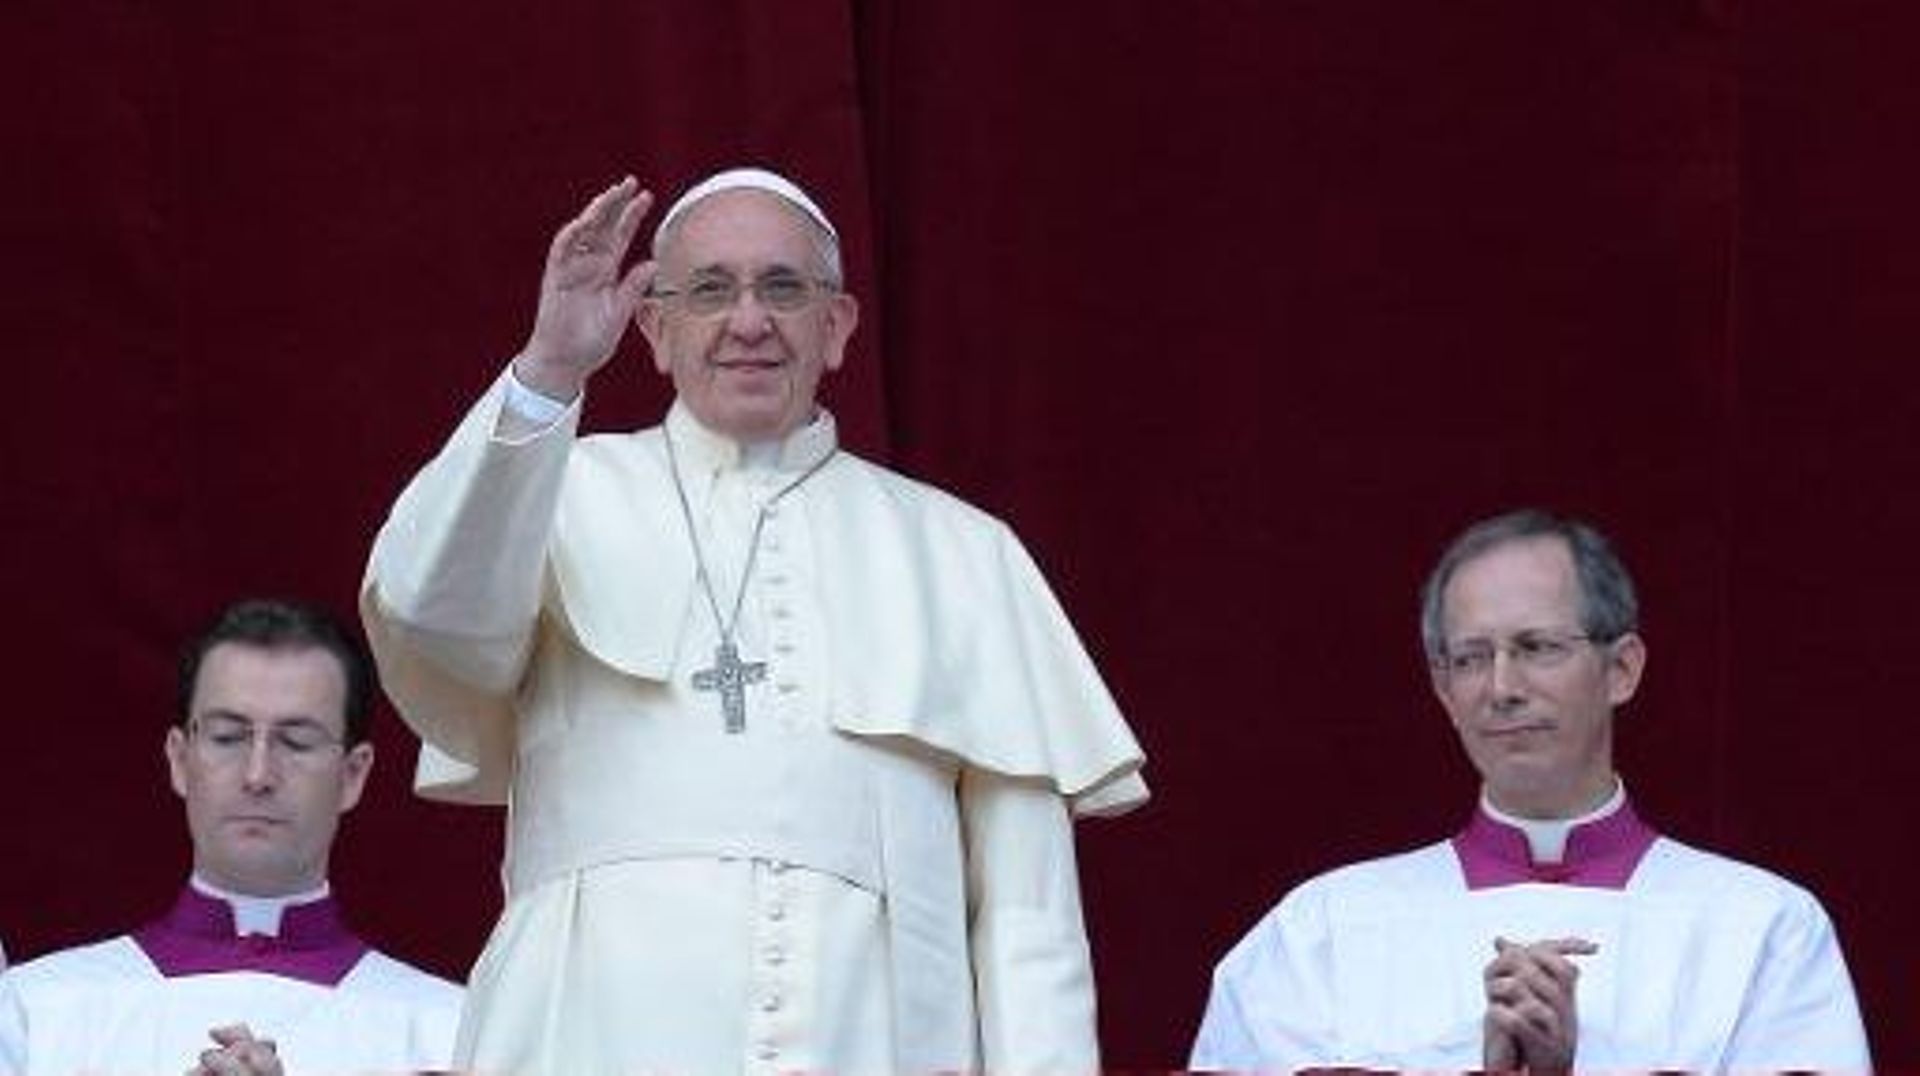 Le pape François bénit la foule depuis le balcon de la basilique Saint-Pierre le 25 décembre 2013 à Rome